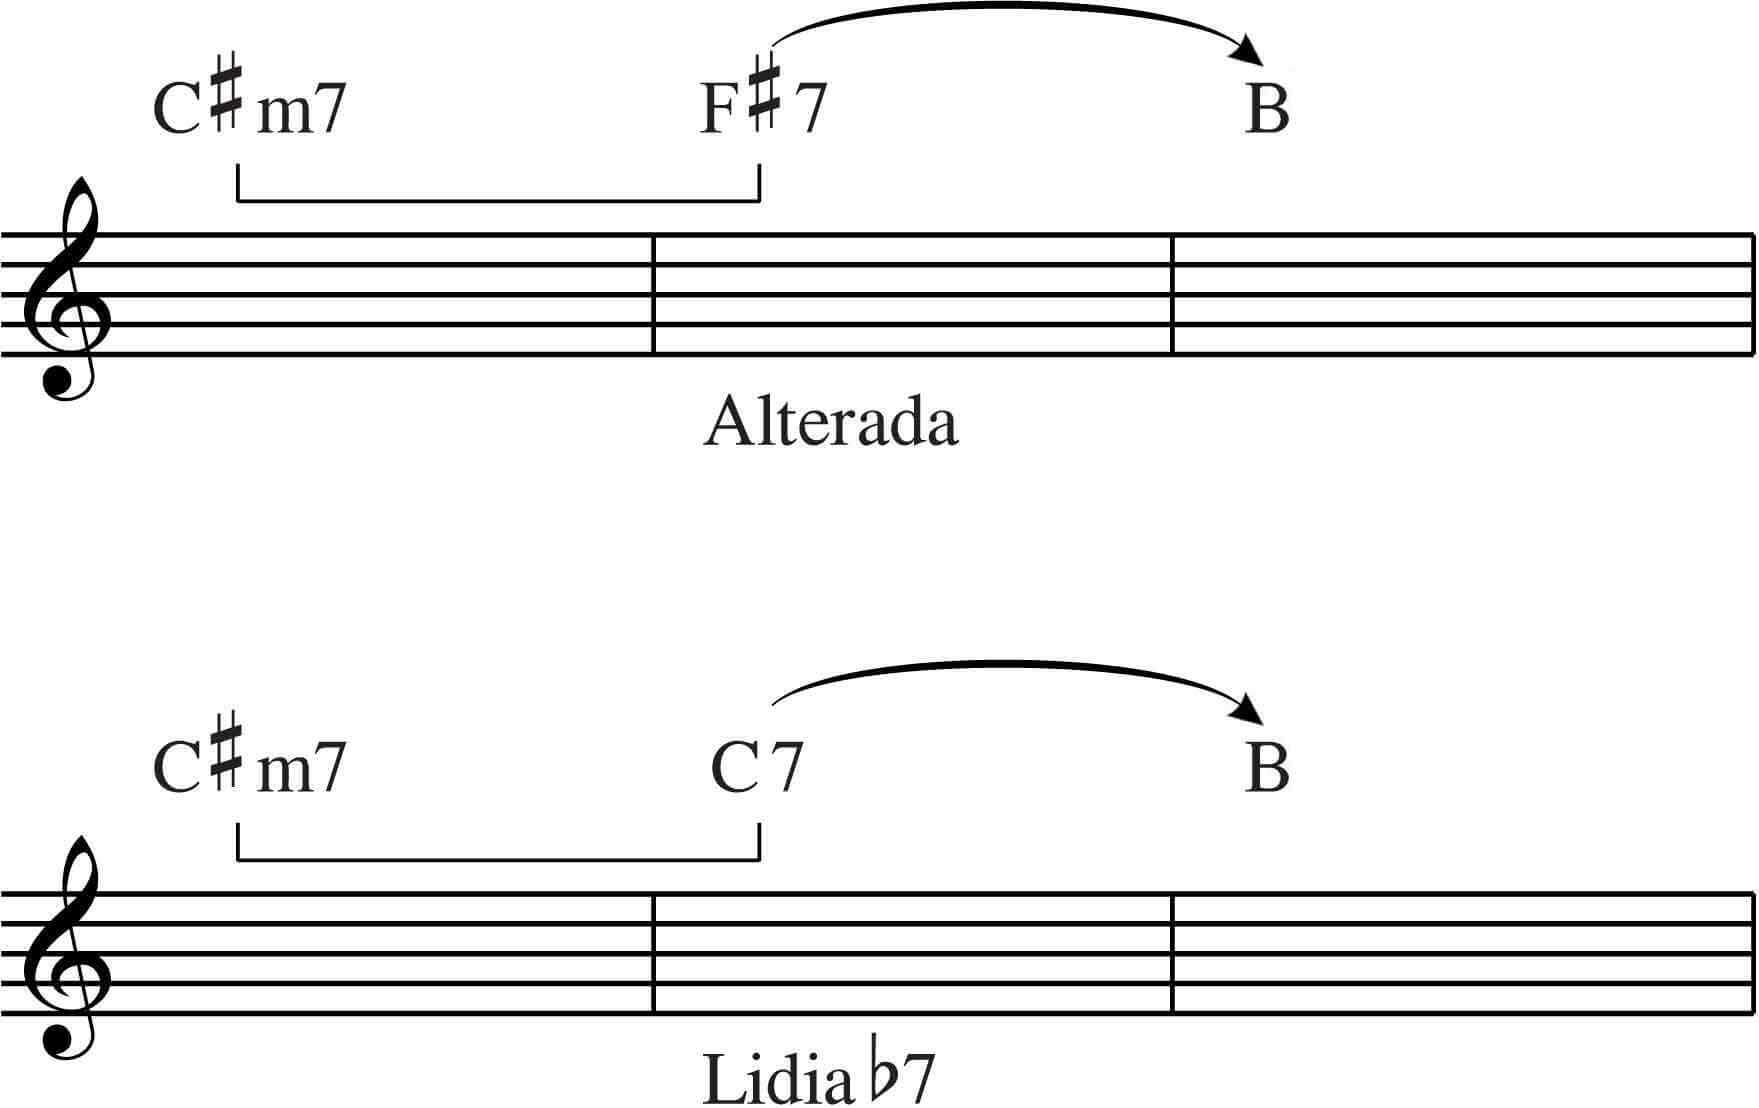 Escala Lidia-b7 y escala alterada